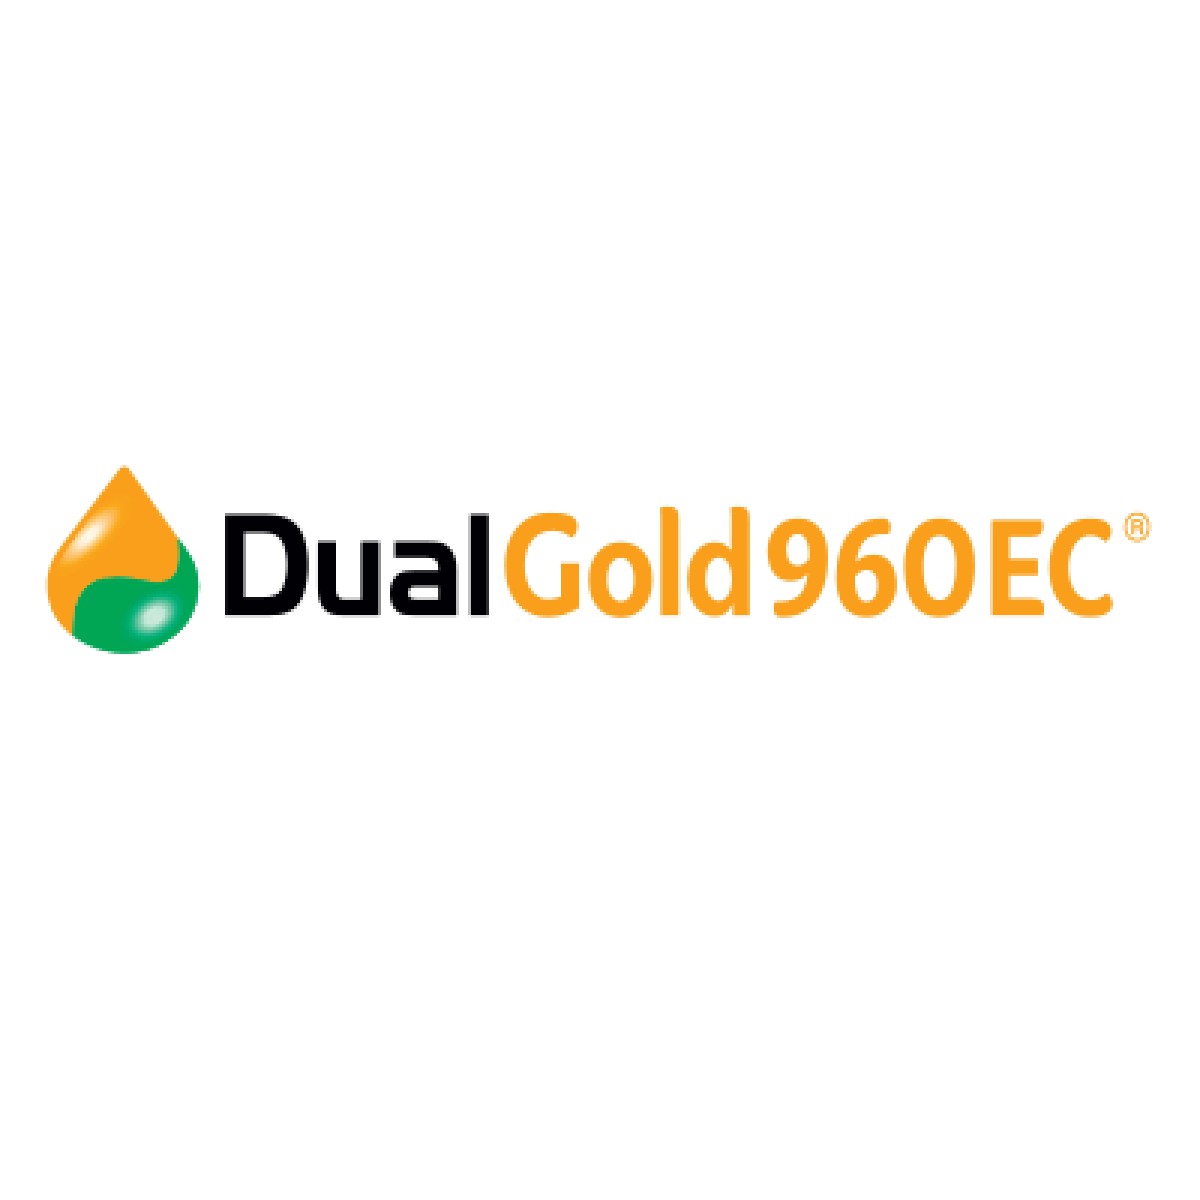 Dual Gold 960 EC